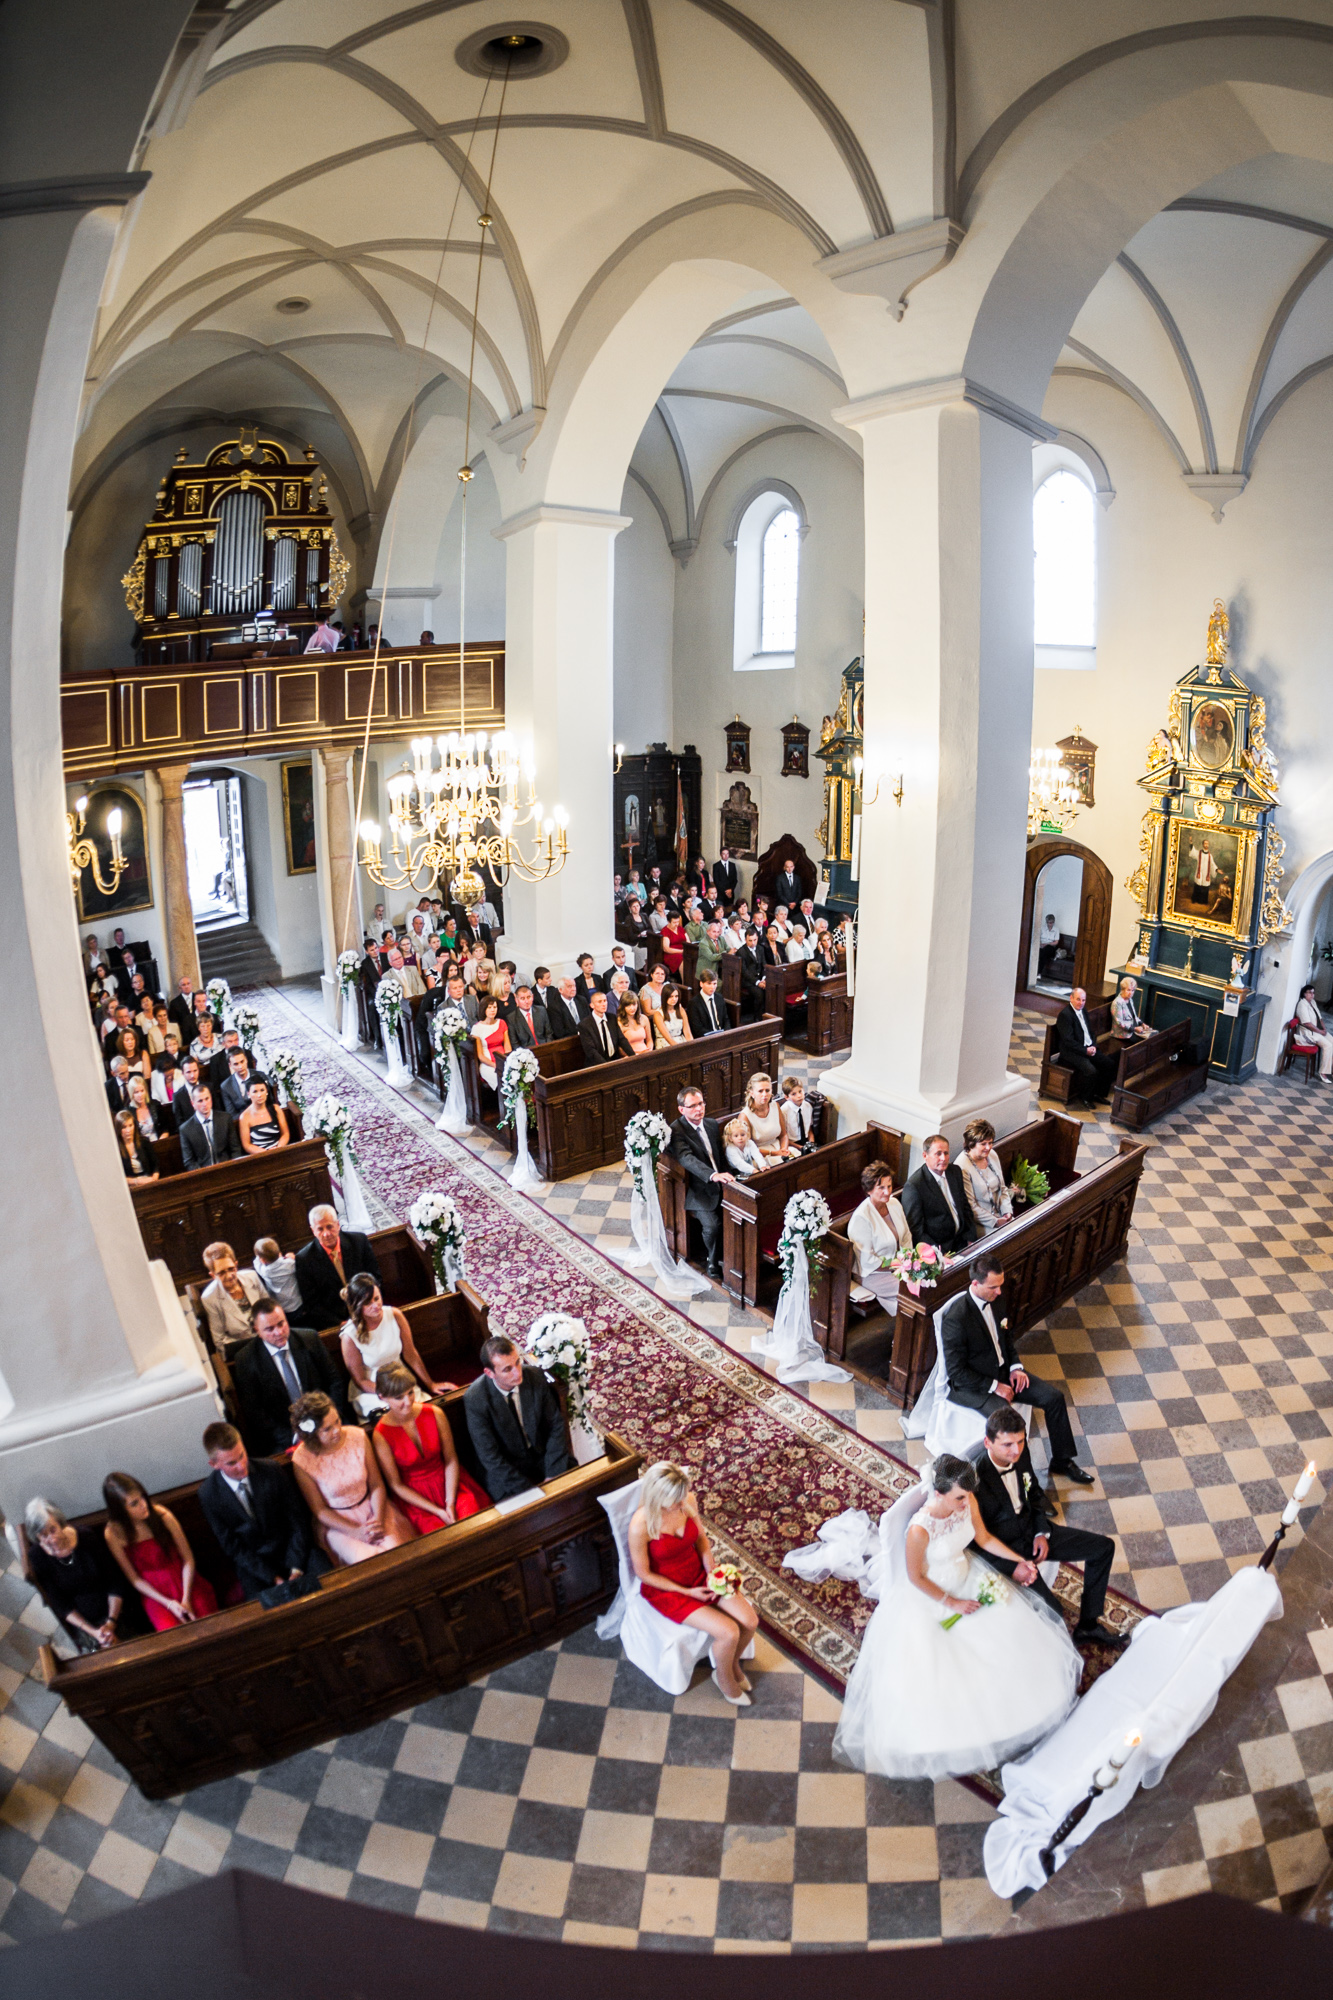 Urok monumentalnych kościołów na zdjęciach ślubnych